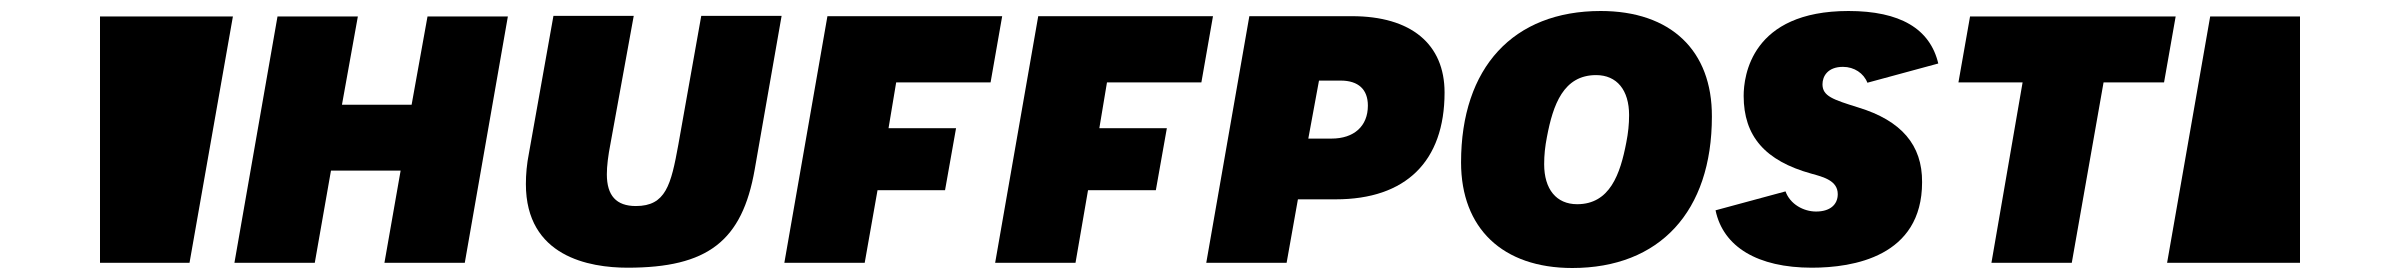 huffingtonpost-logo-black-transparent.png